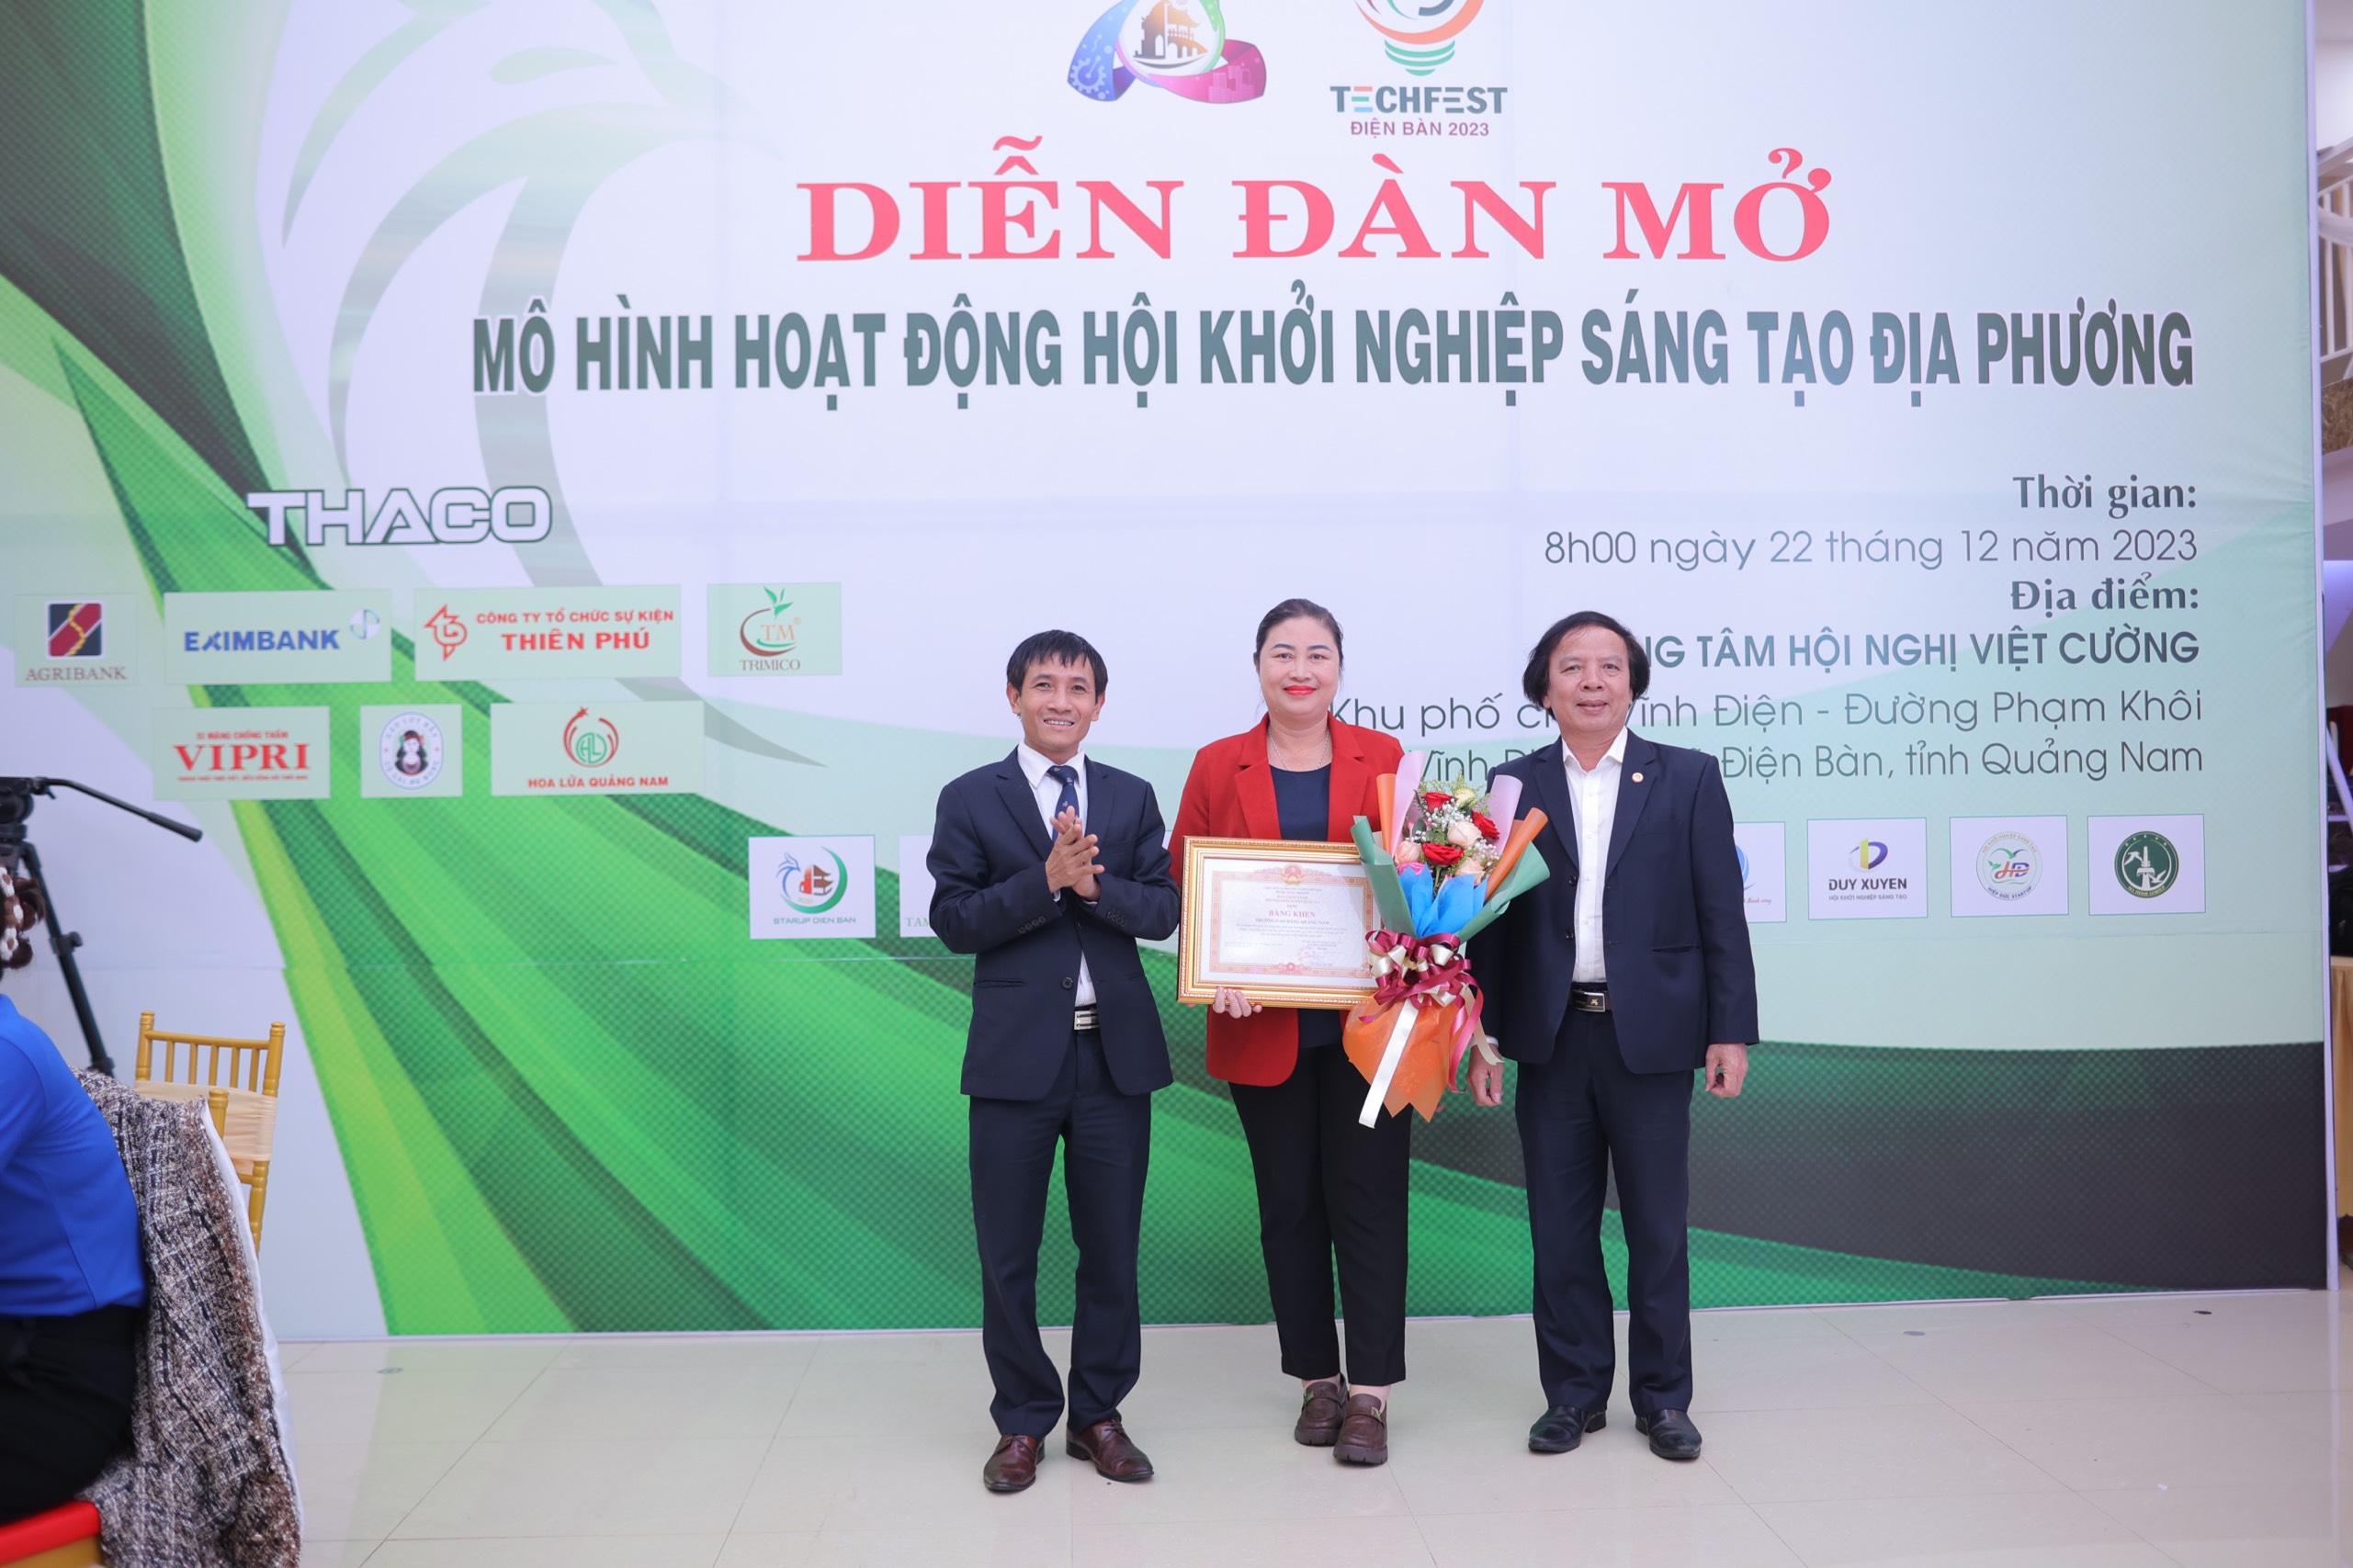 Trường Cao đẳng Quảng Nam vinh dự nhận Bằng khen của Hiệp Hội Khởi nghiệp quốc gia